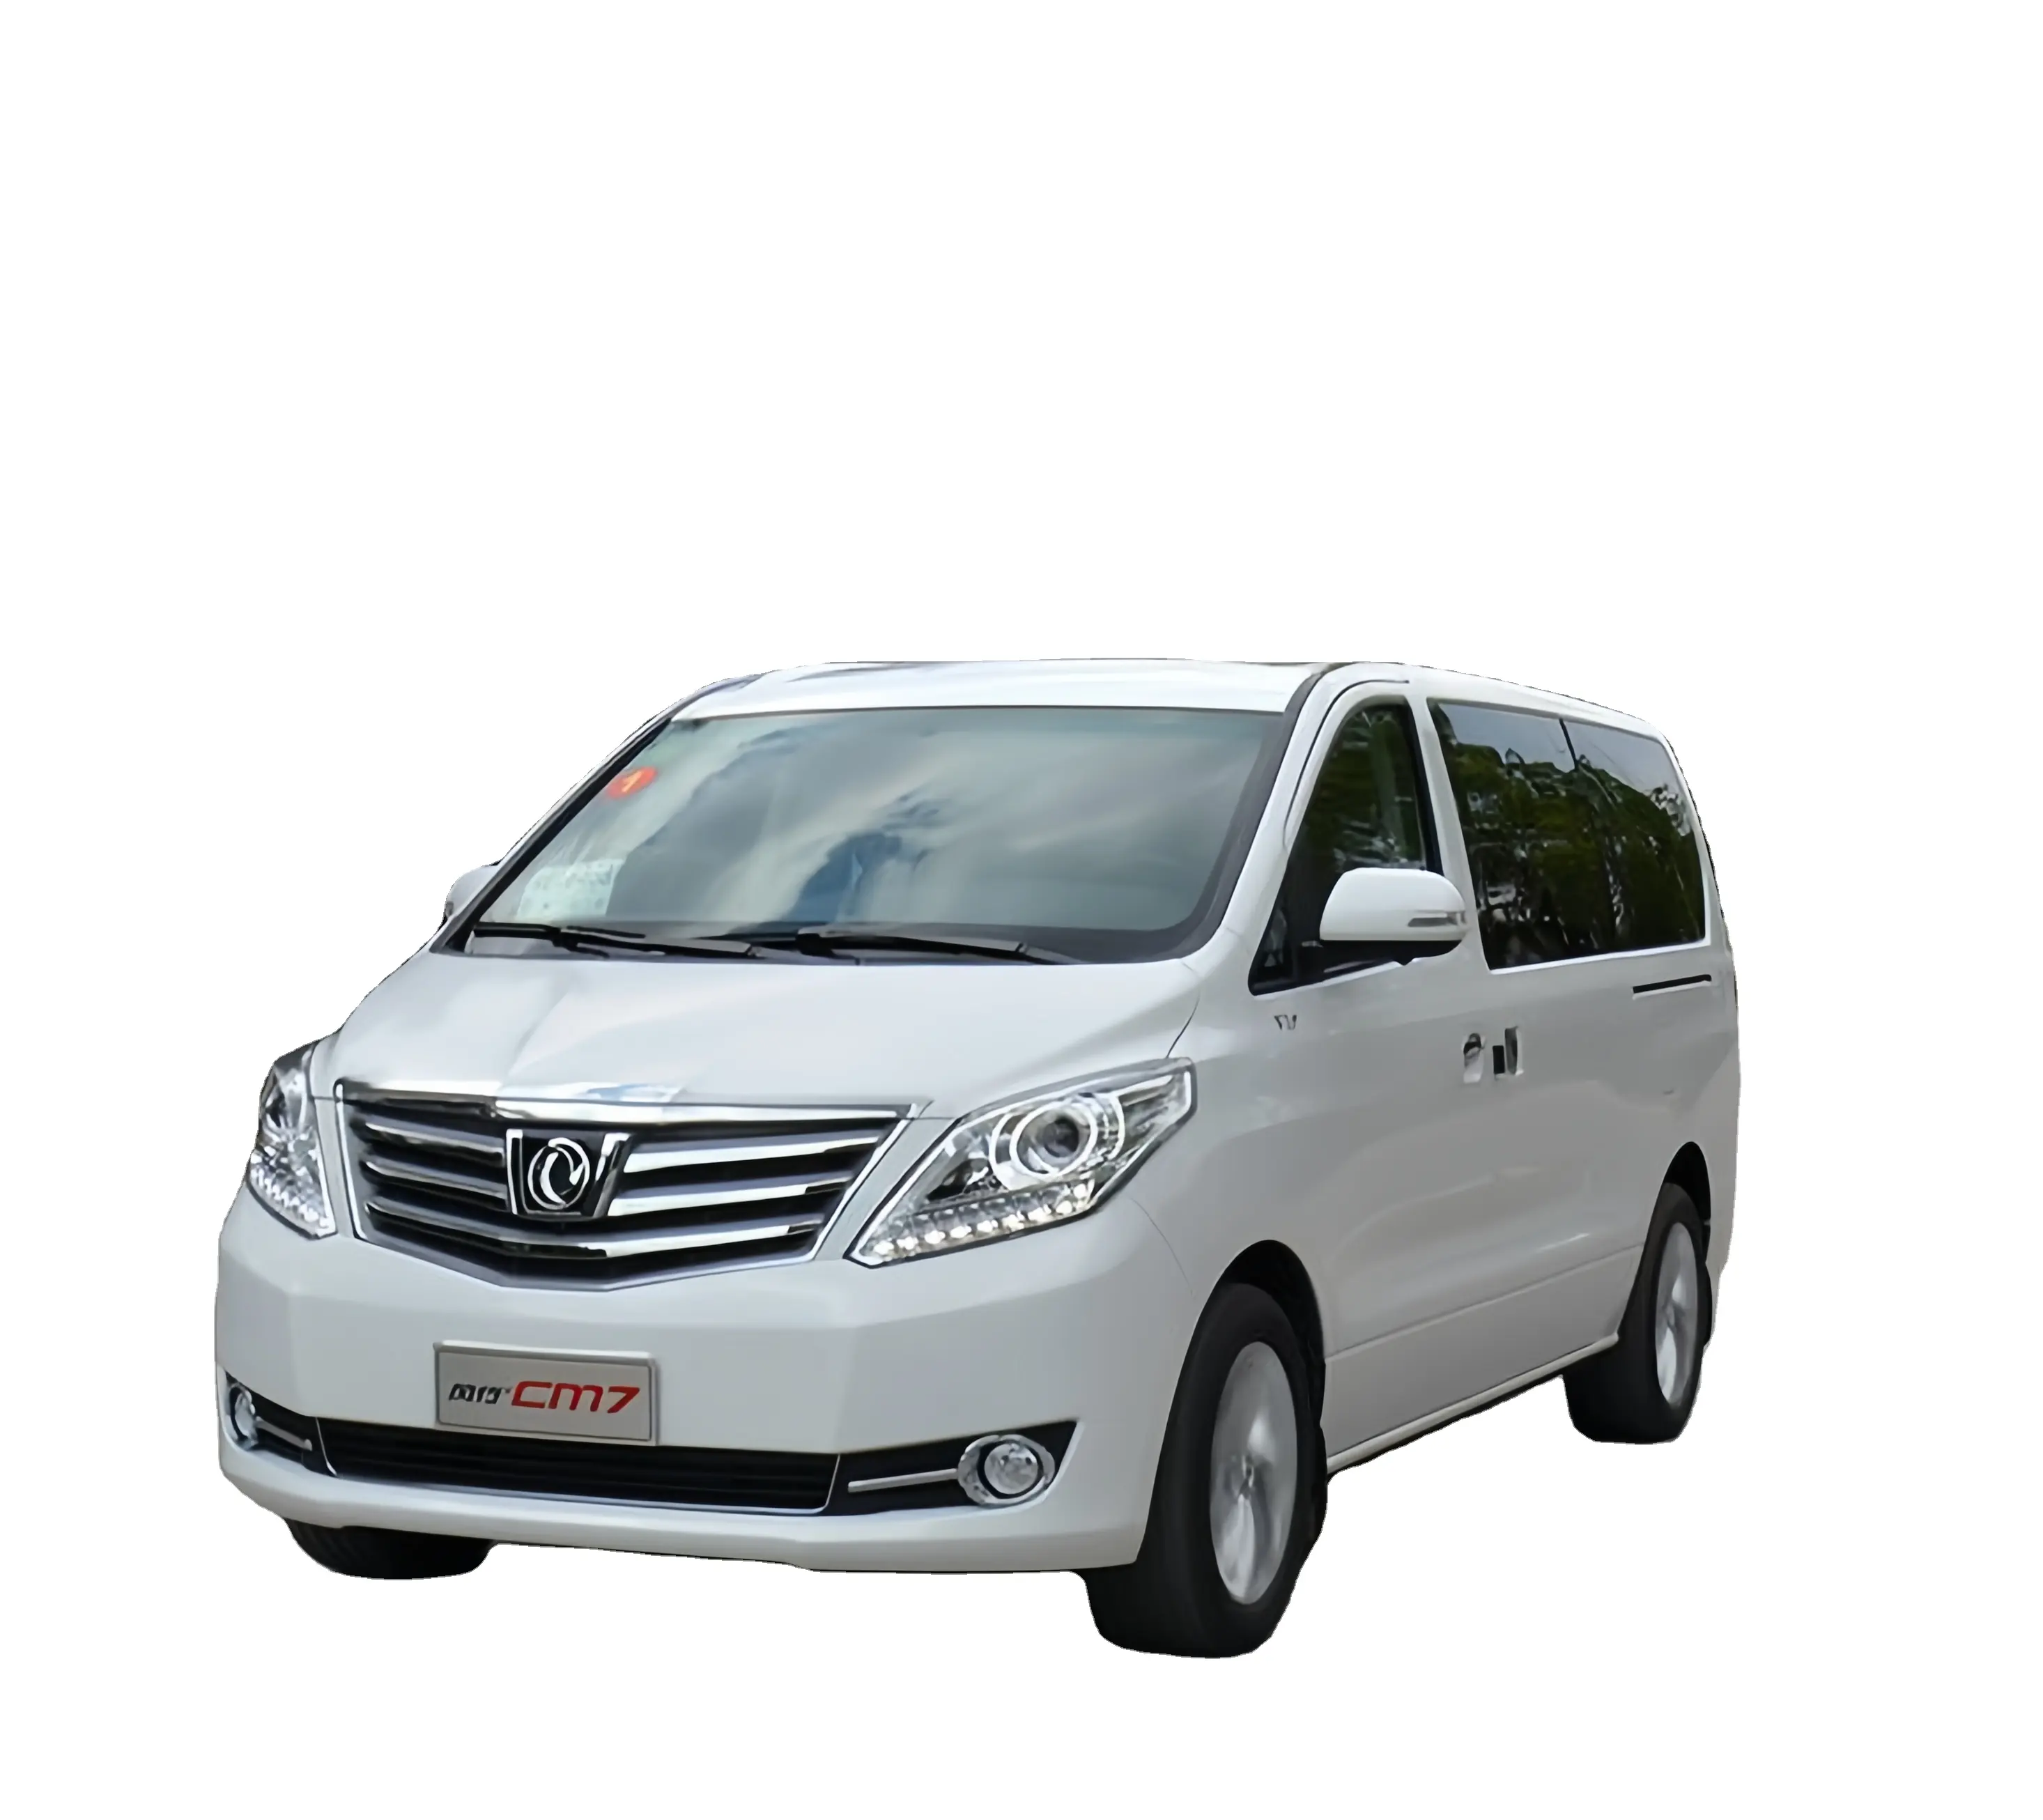 Meilleures ventes et nouveau design Voitures suv Dongfeng fengxing JOYEAR SX6 voiture suv automatique véhicules à essence voitures d'occasion